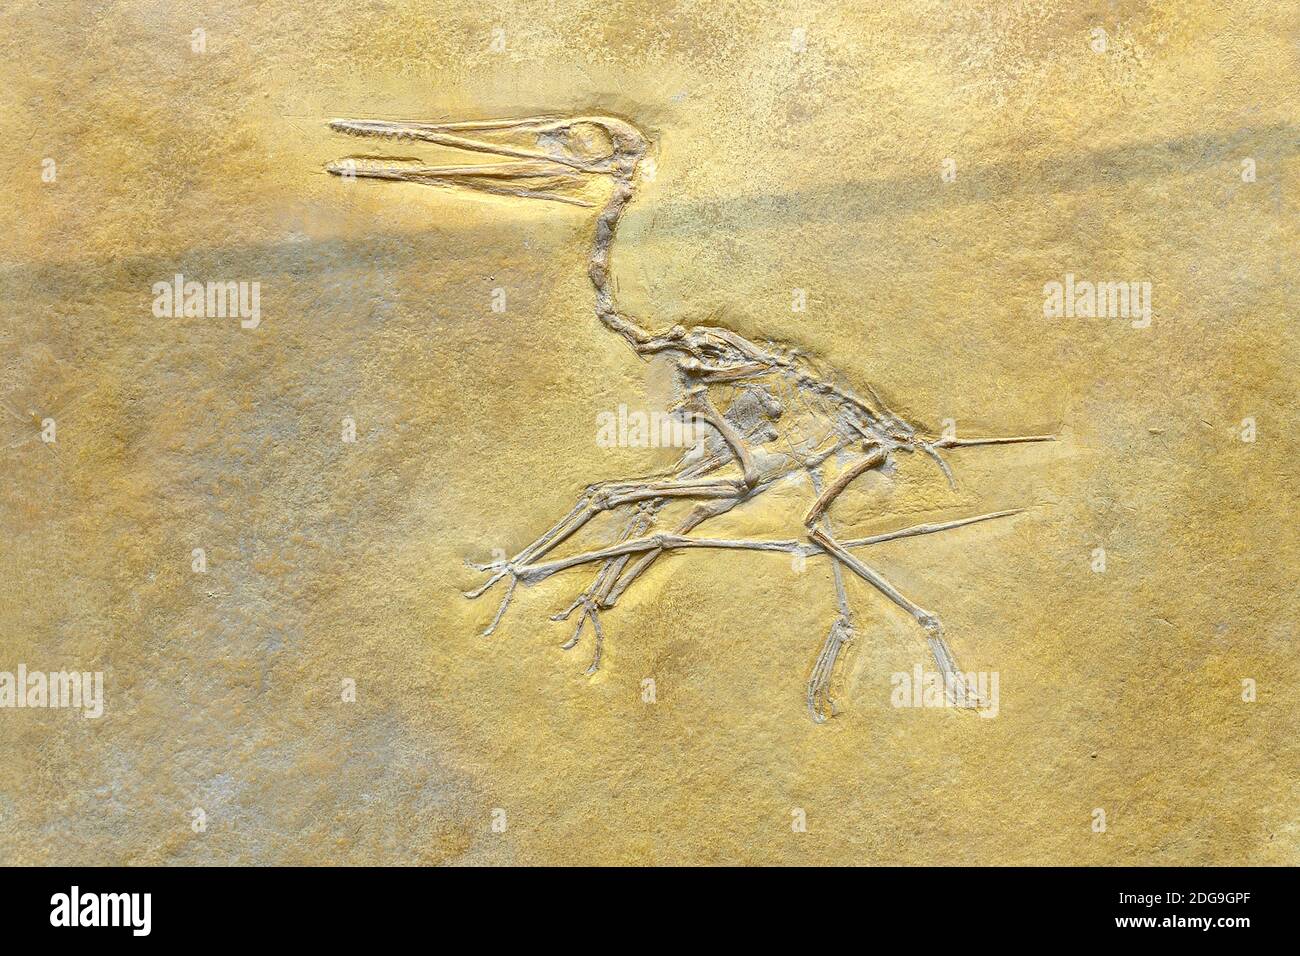 Versteinerung eines kurzschwänziger Flugsaurier (Pterodactylus kochi), il Museum für Naturkunde, Naturkundemuseum Berlin Foto Stock